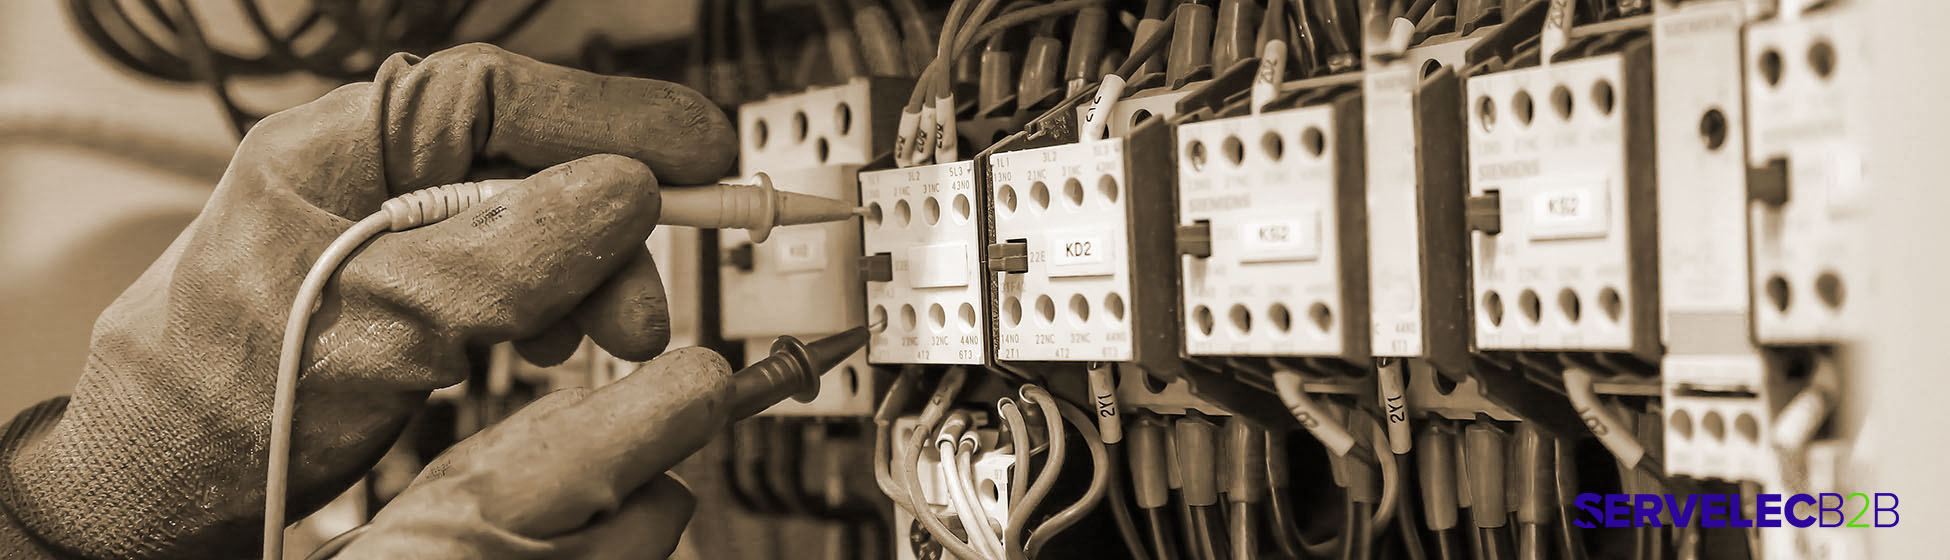 Mise aux normes électriques obligation propriétaire